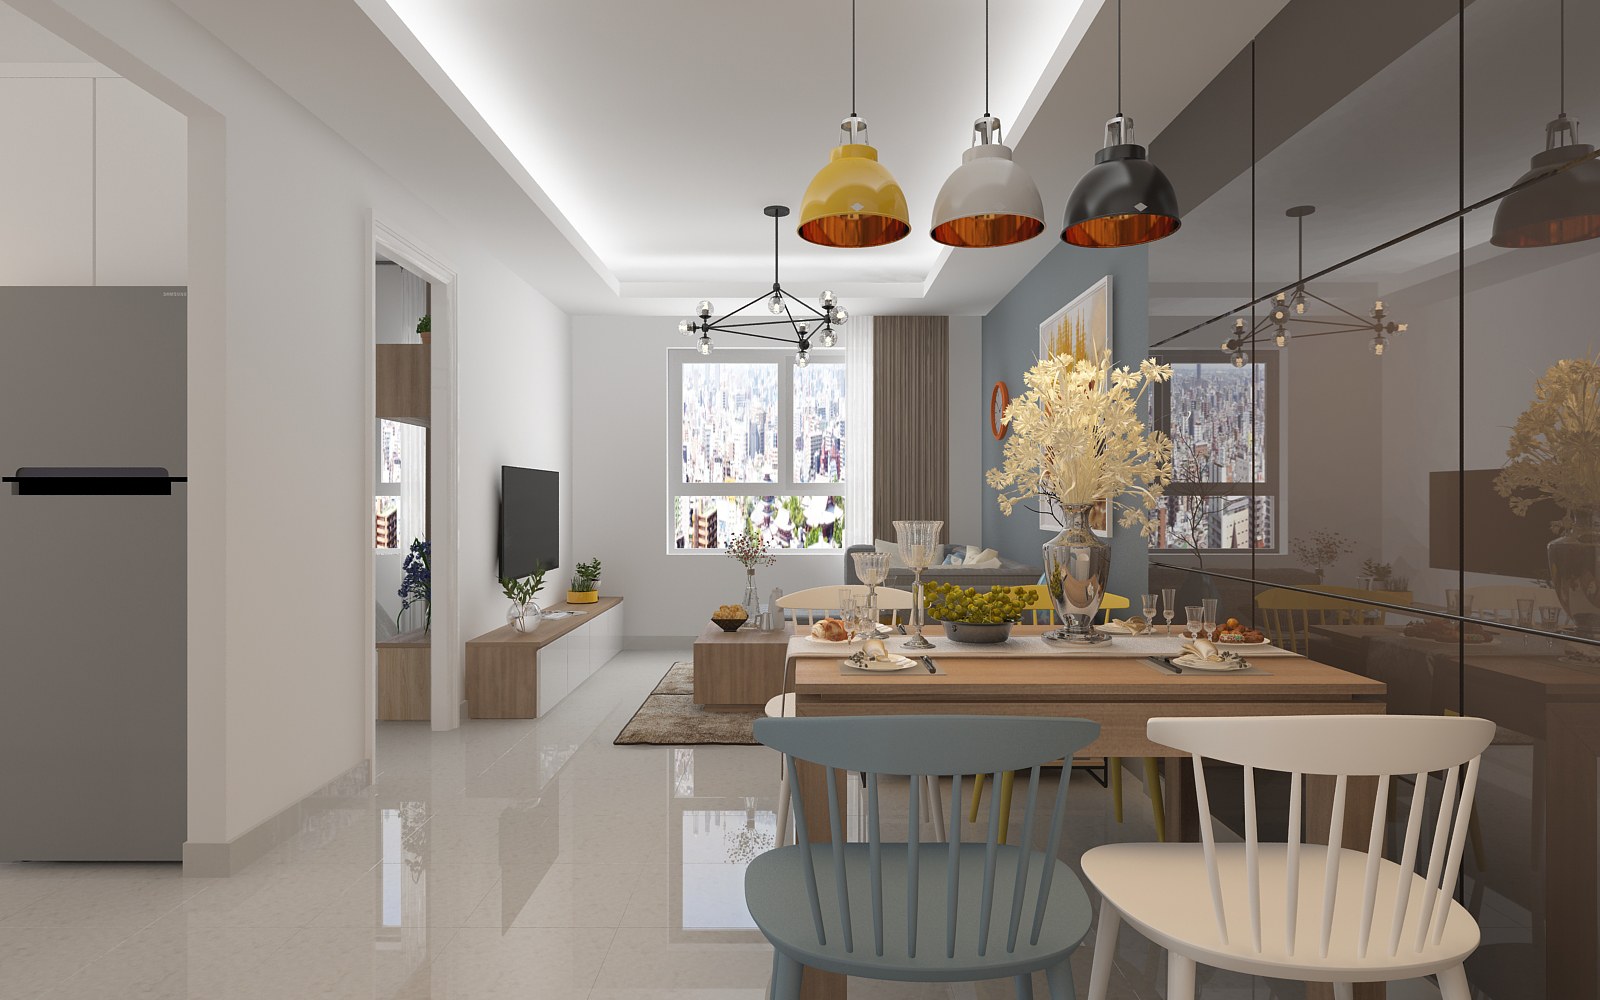 Thiết kế mở giúp không gian phòng khách – ăn rộng rãi hơn